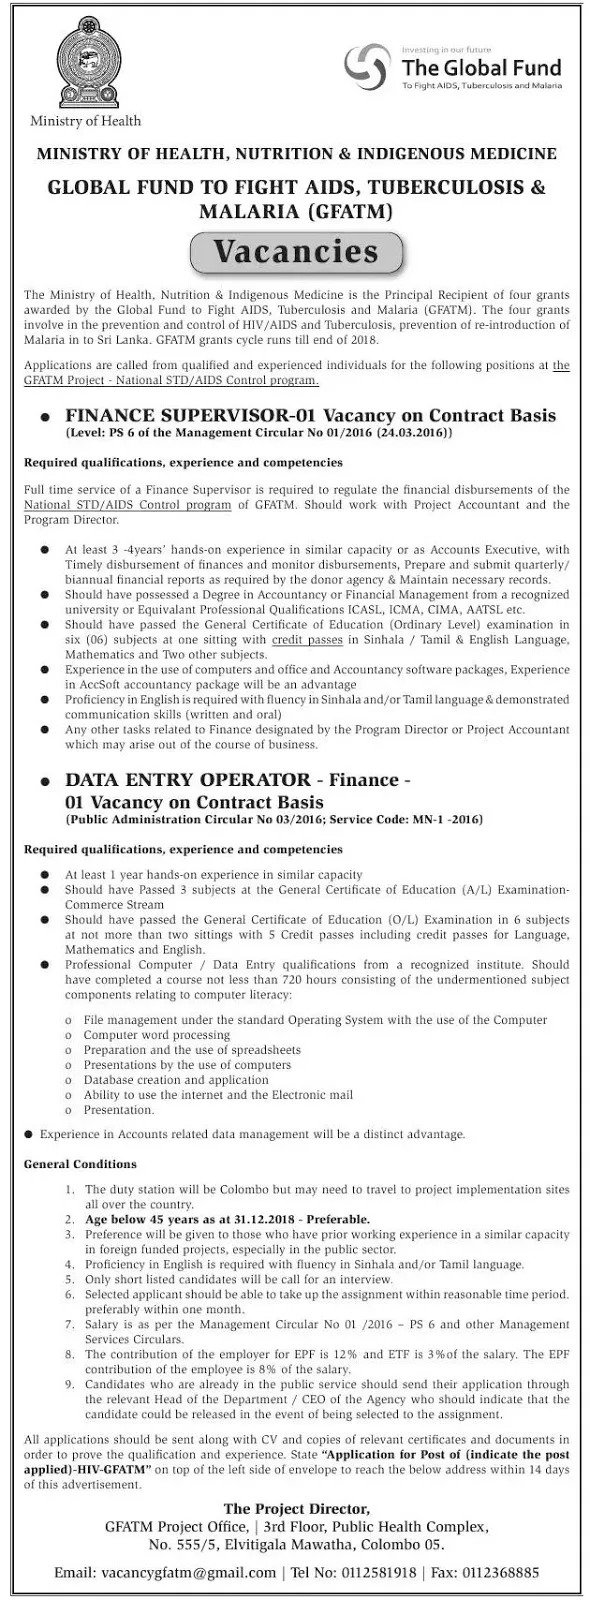 Finance Supervisor / Data Entry Operator – Ministry of Health